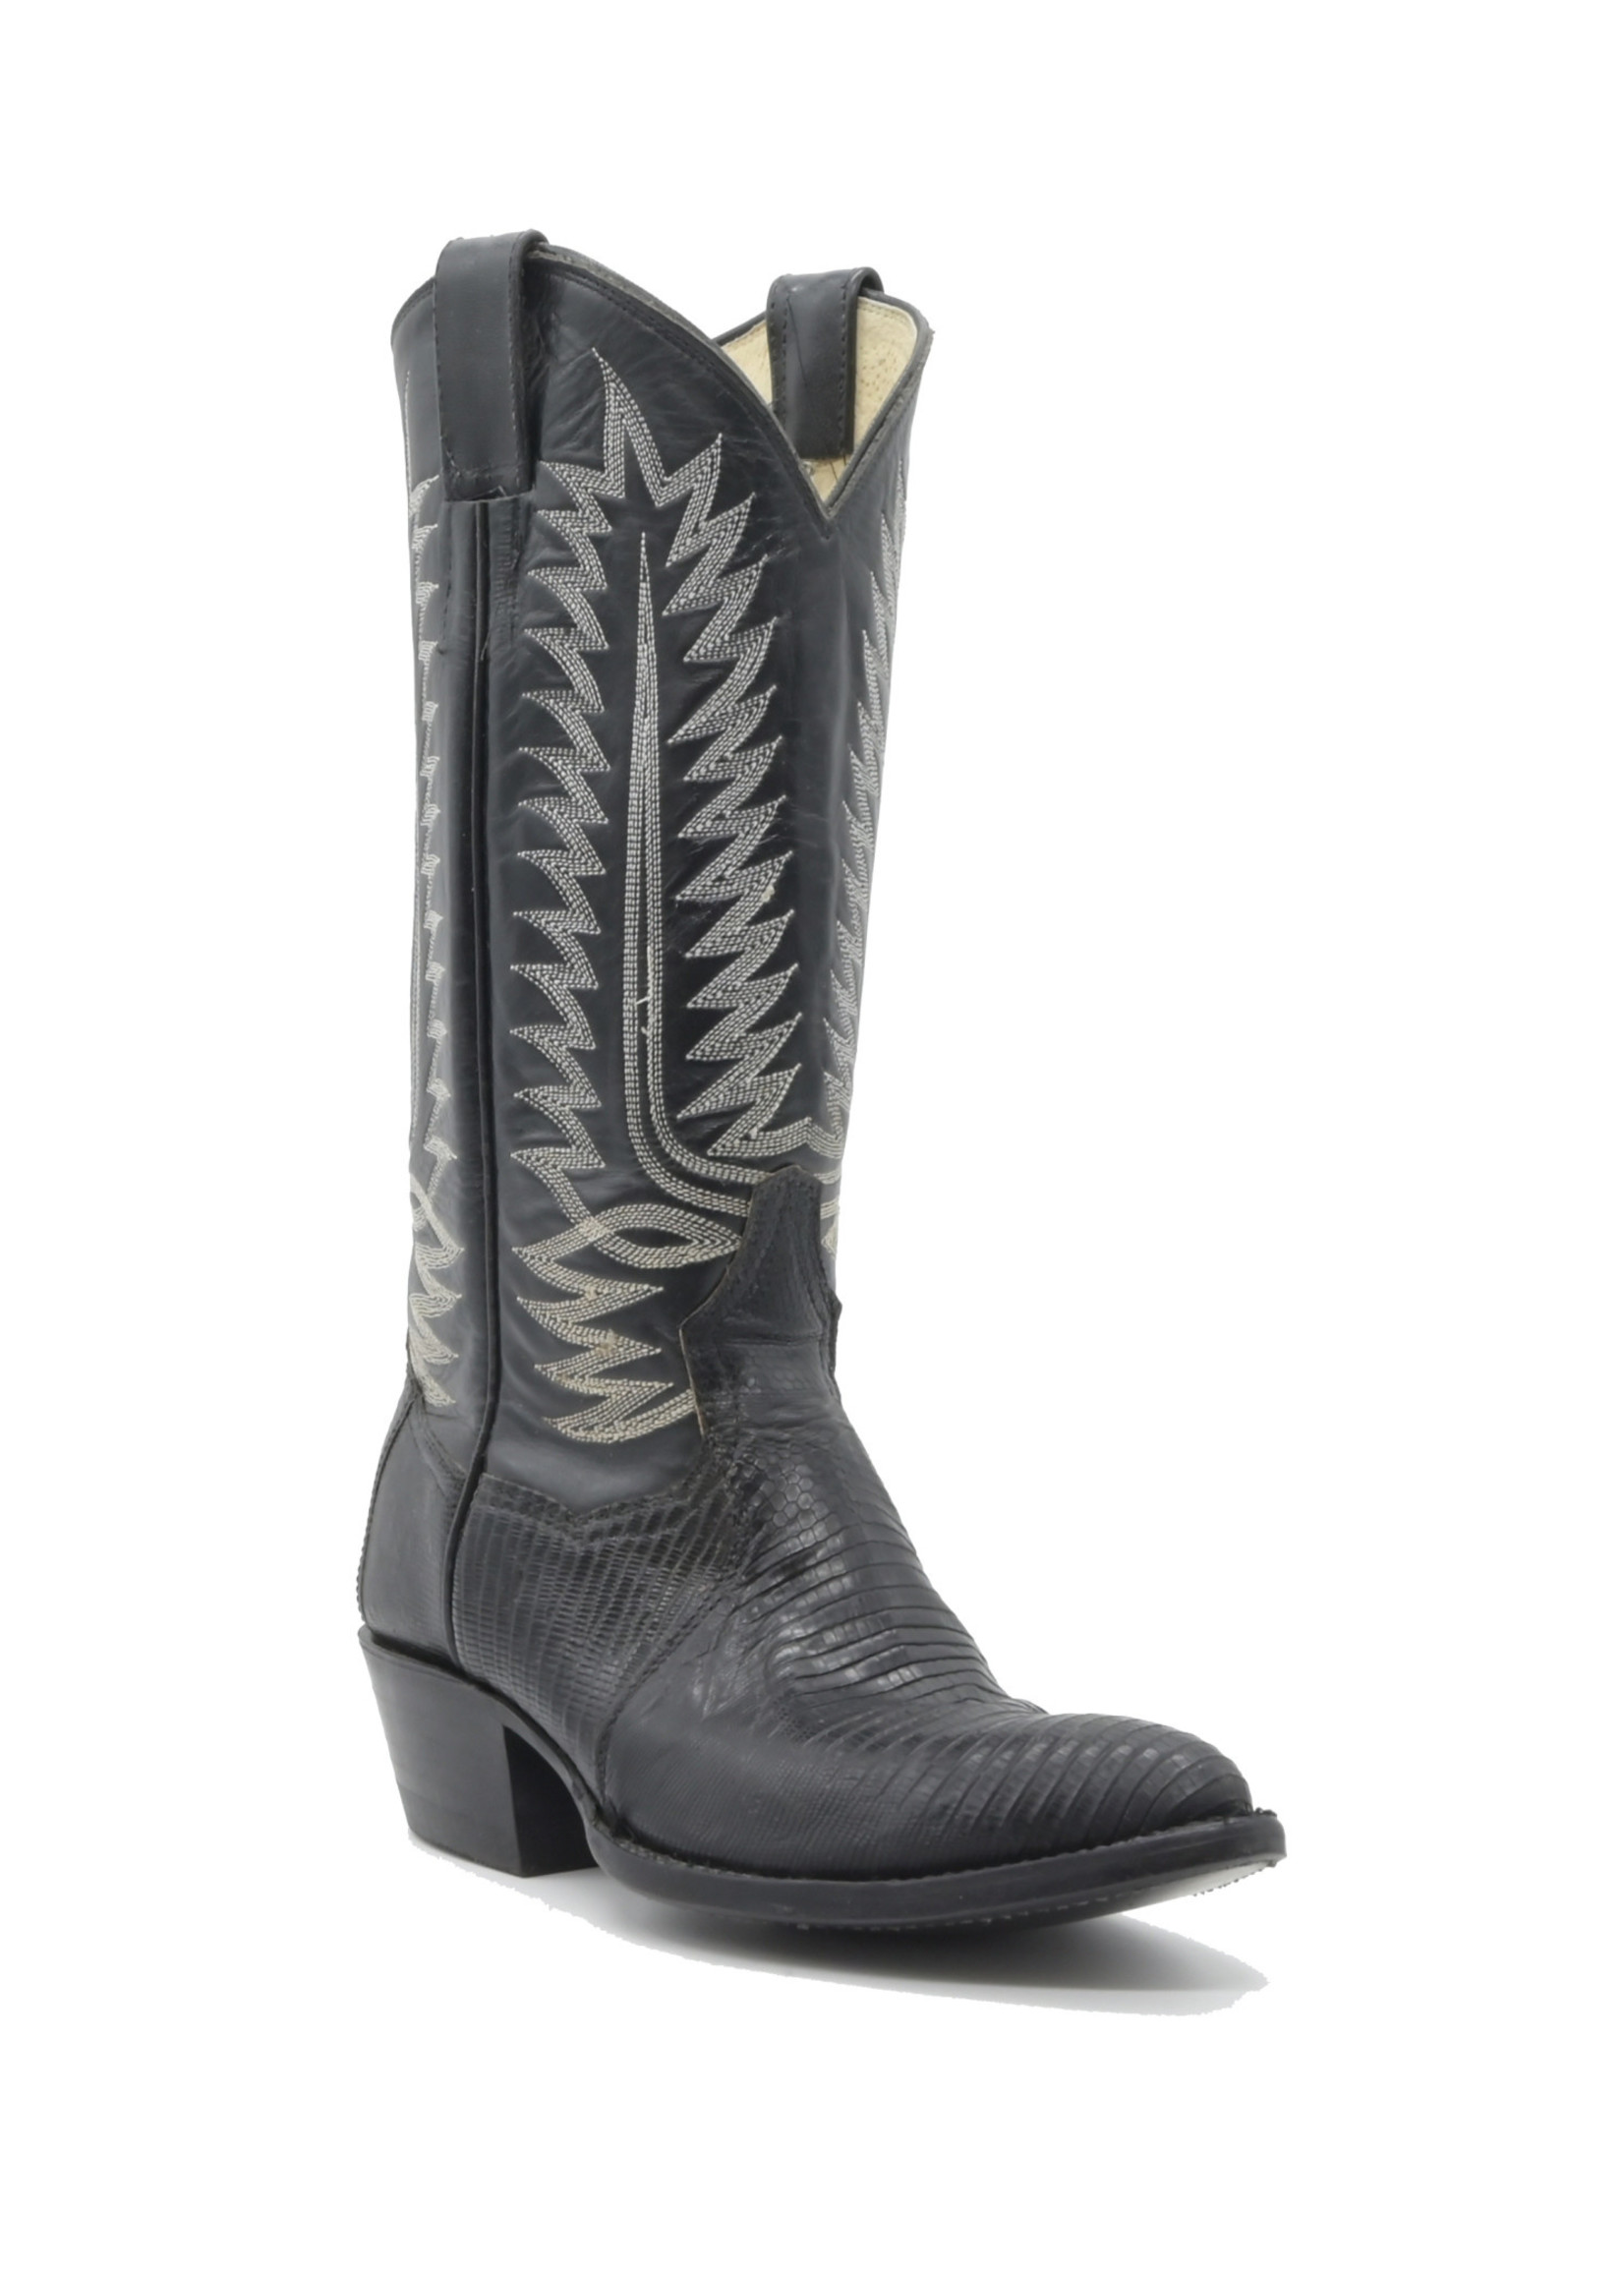 844-Men's Genuine Black Lizard Boots Sizes(7D-7.5D-8D-8.5D-8.5EE-9EE)